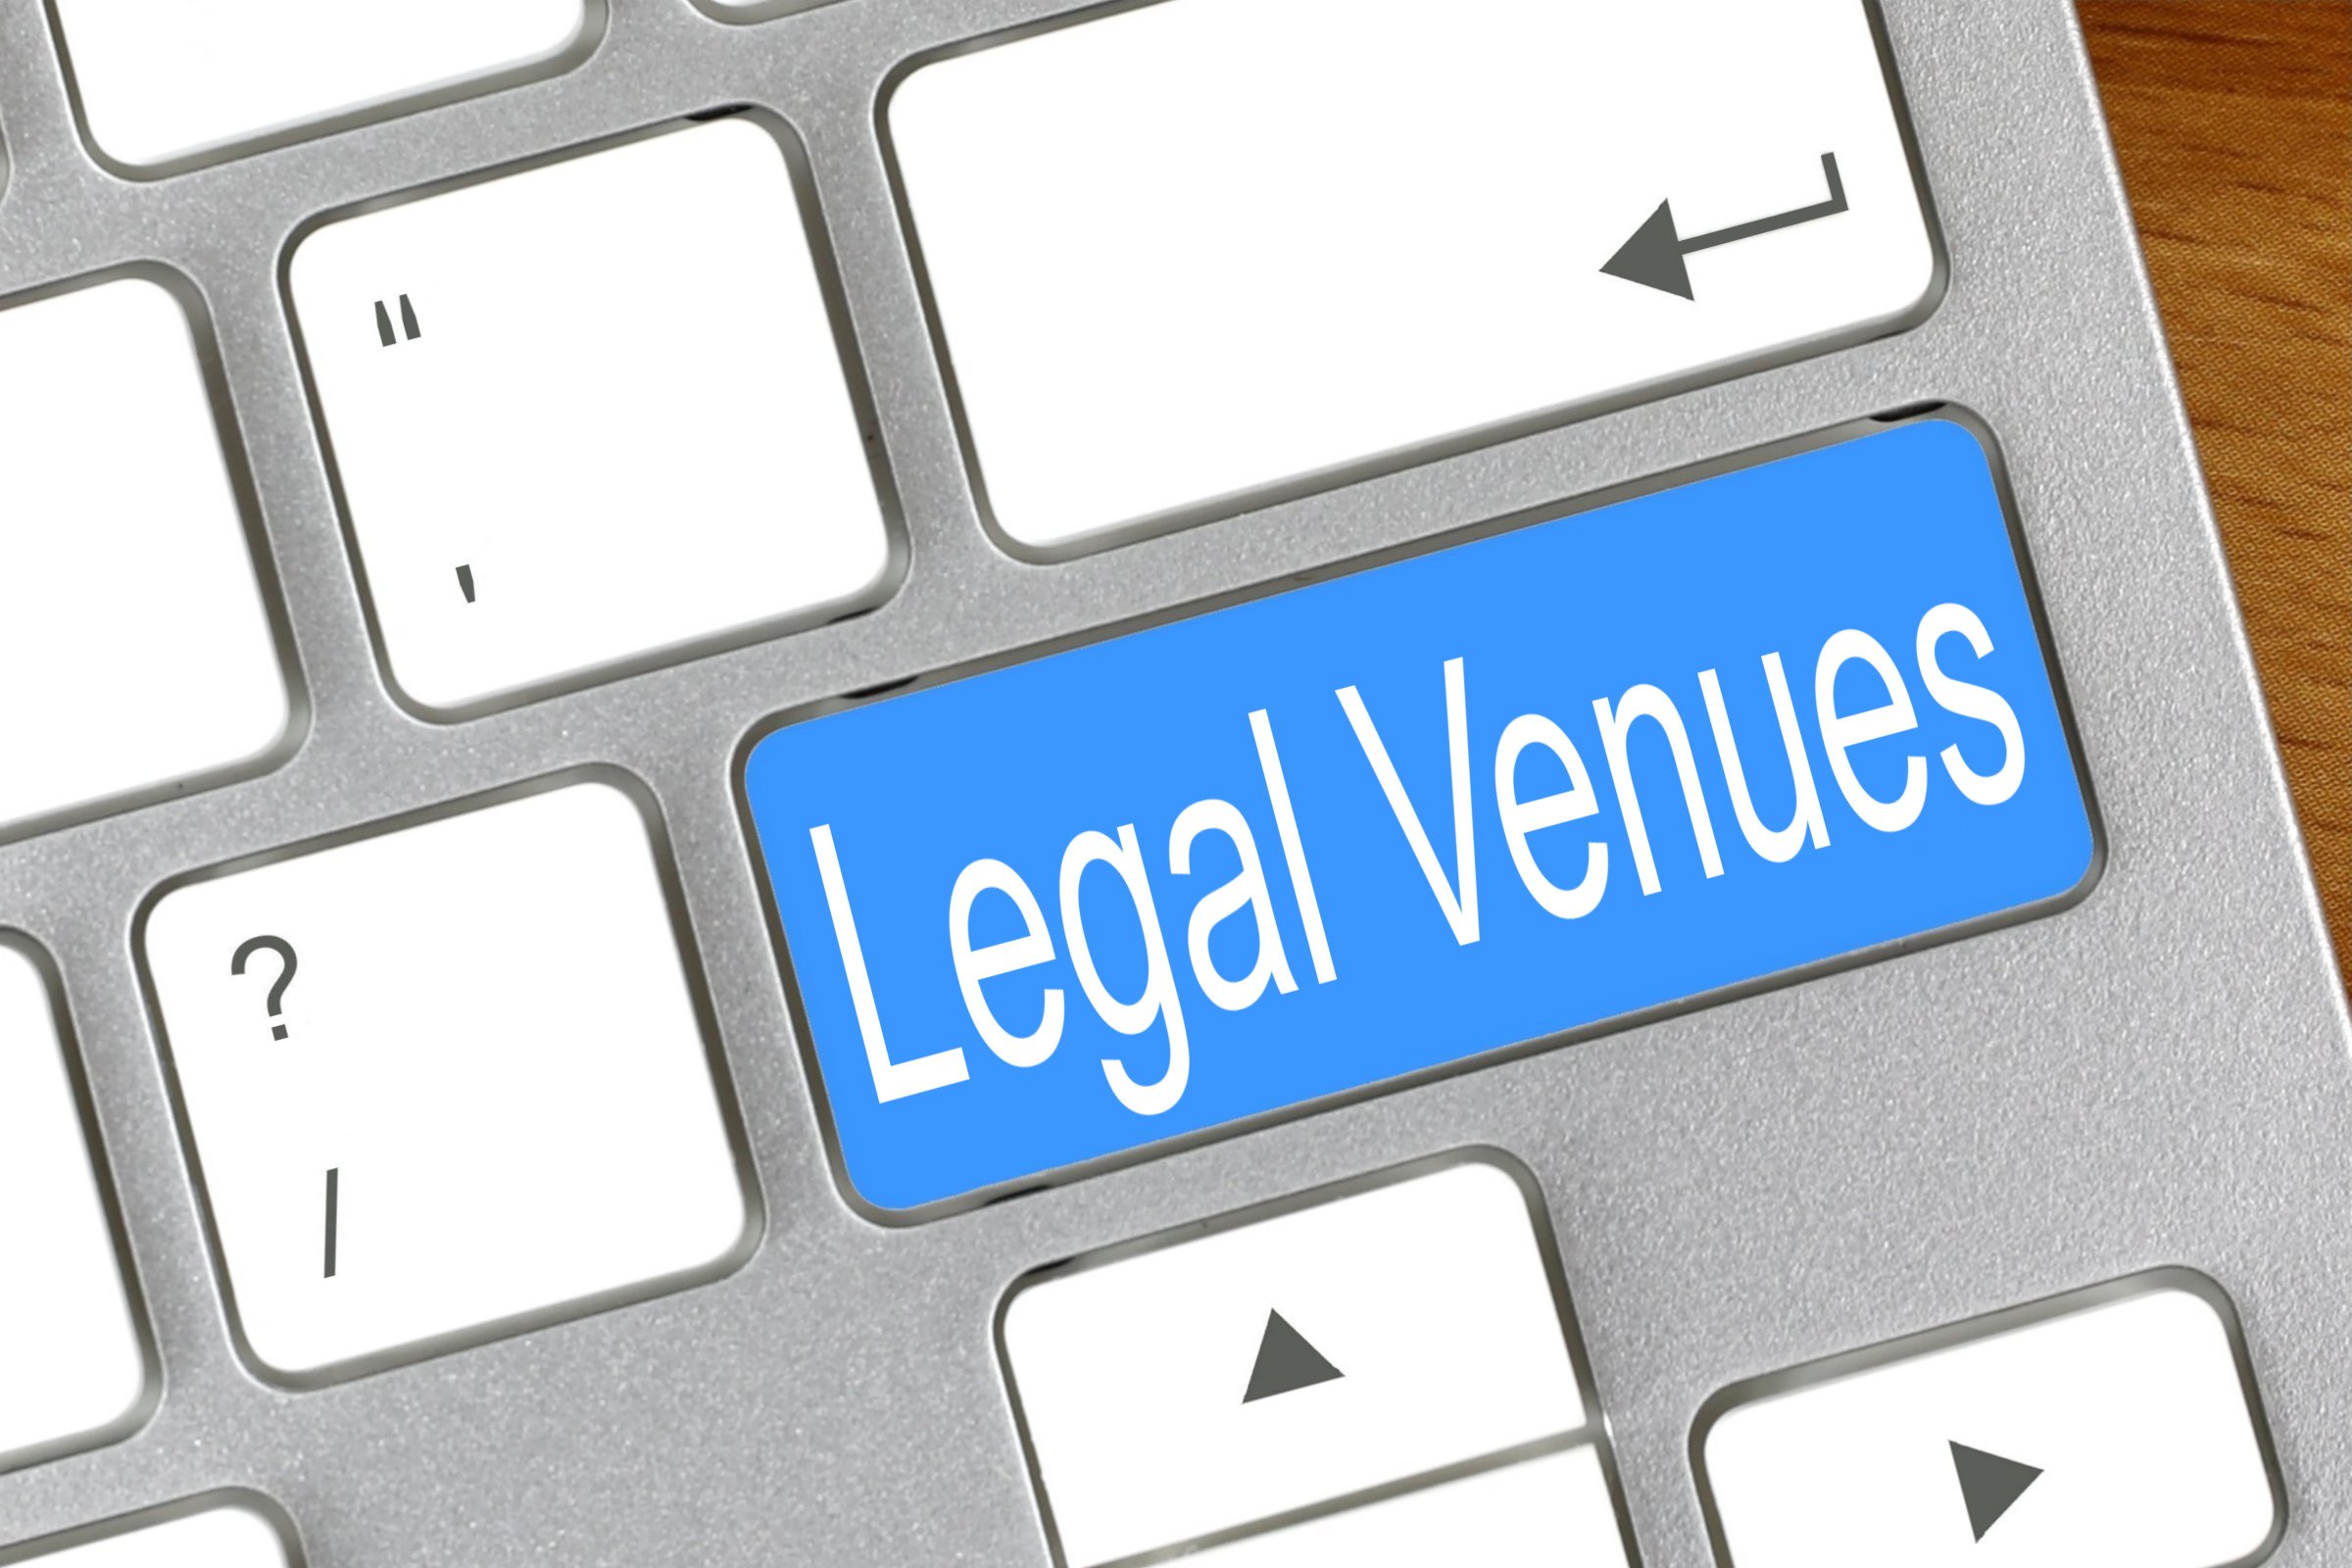 legal venues